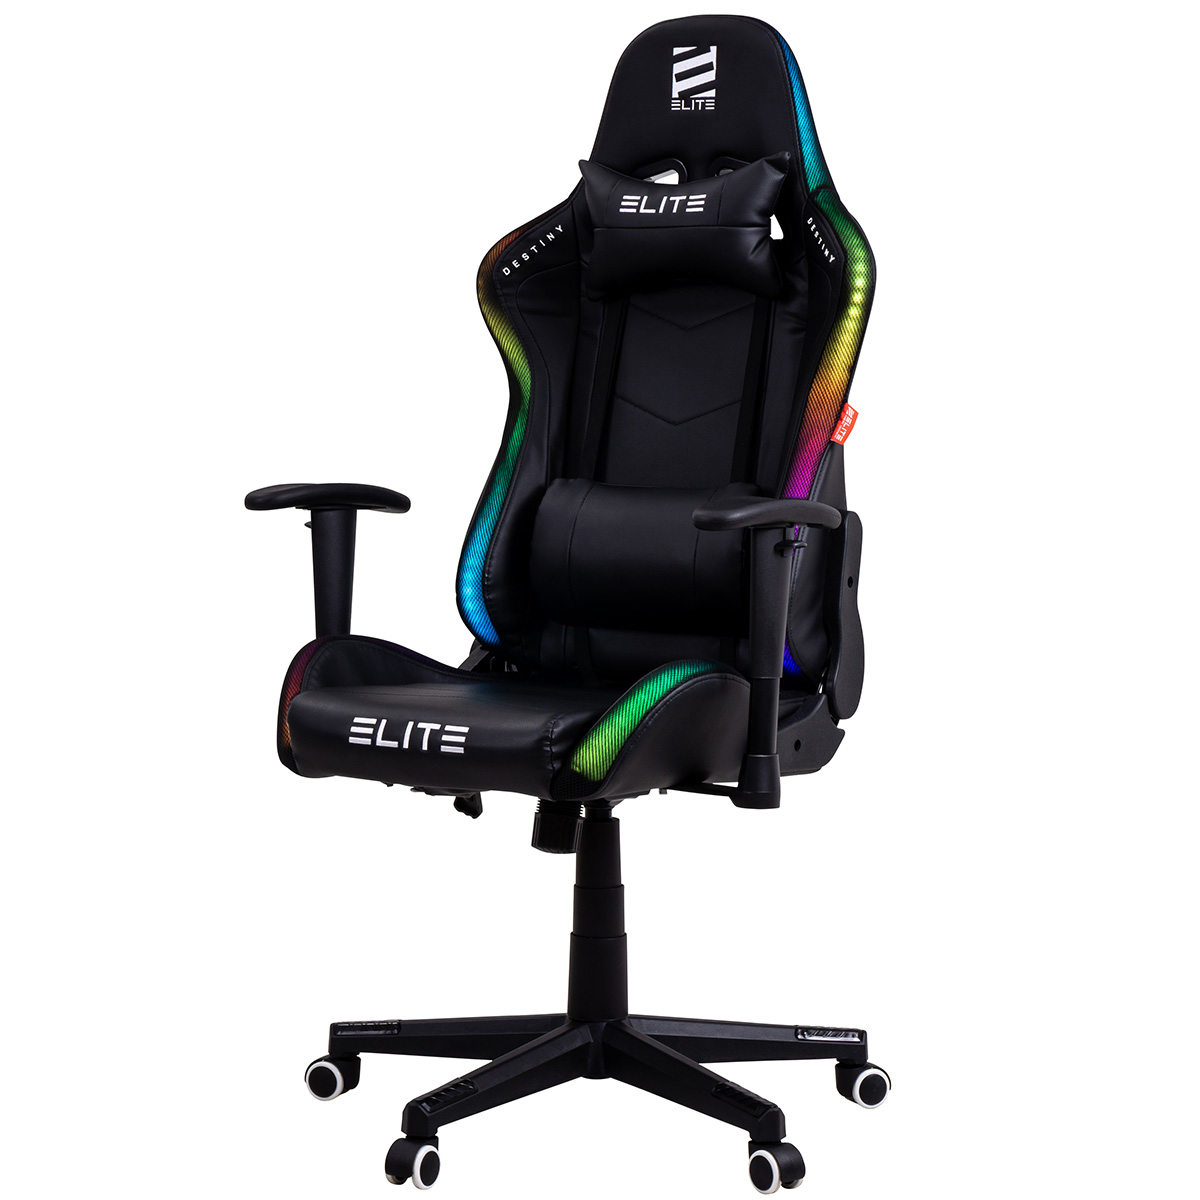 Schwarz RGB RGB-Farbwechsel, DESTINY mit ELITE MG200 Gaming Stuhl RGB